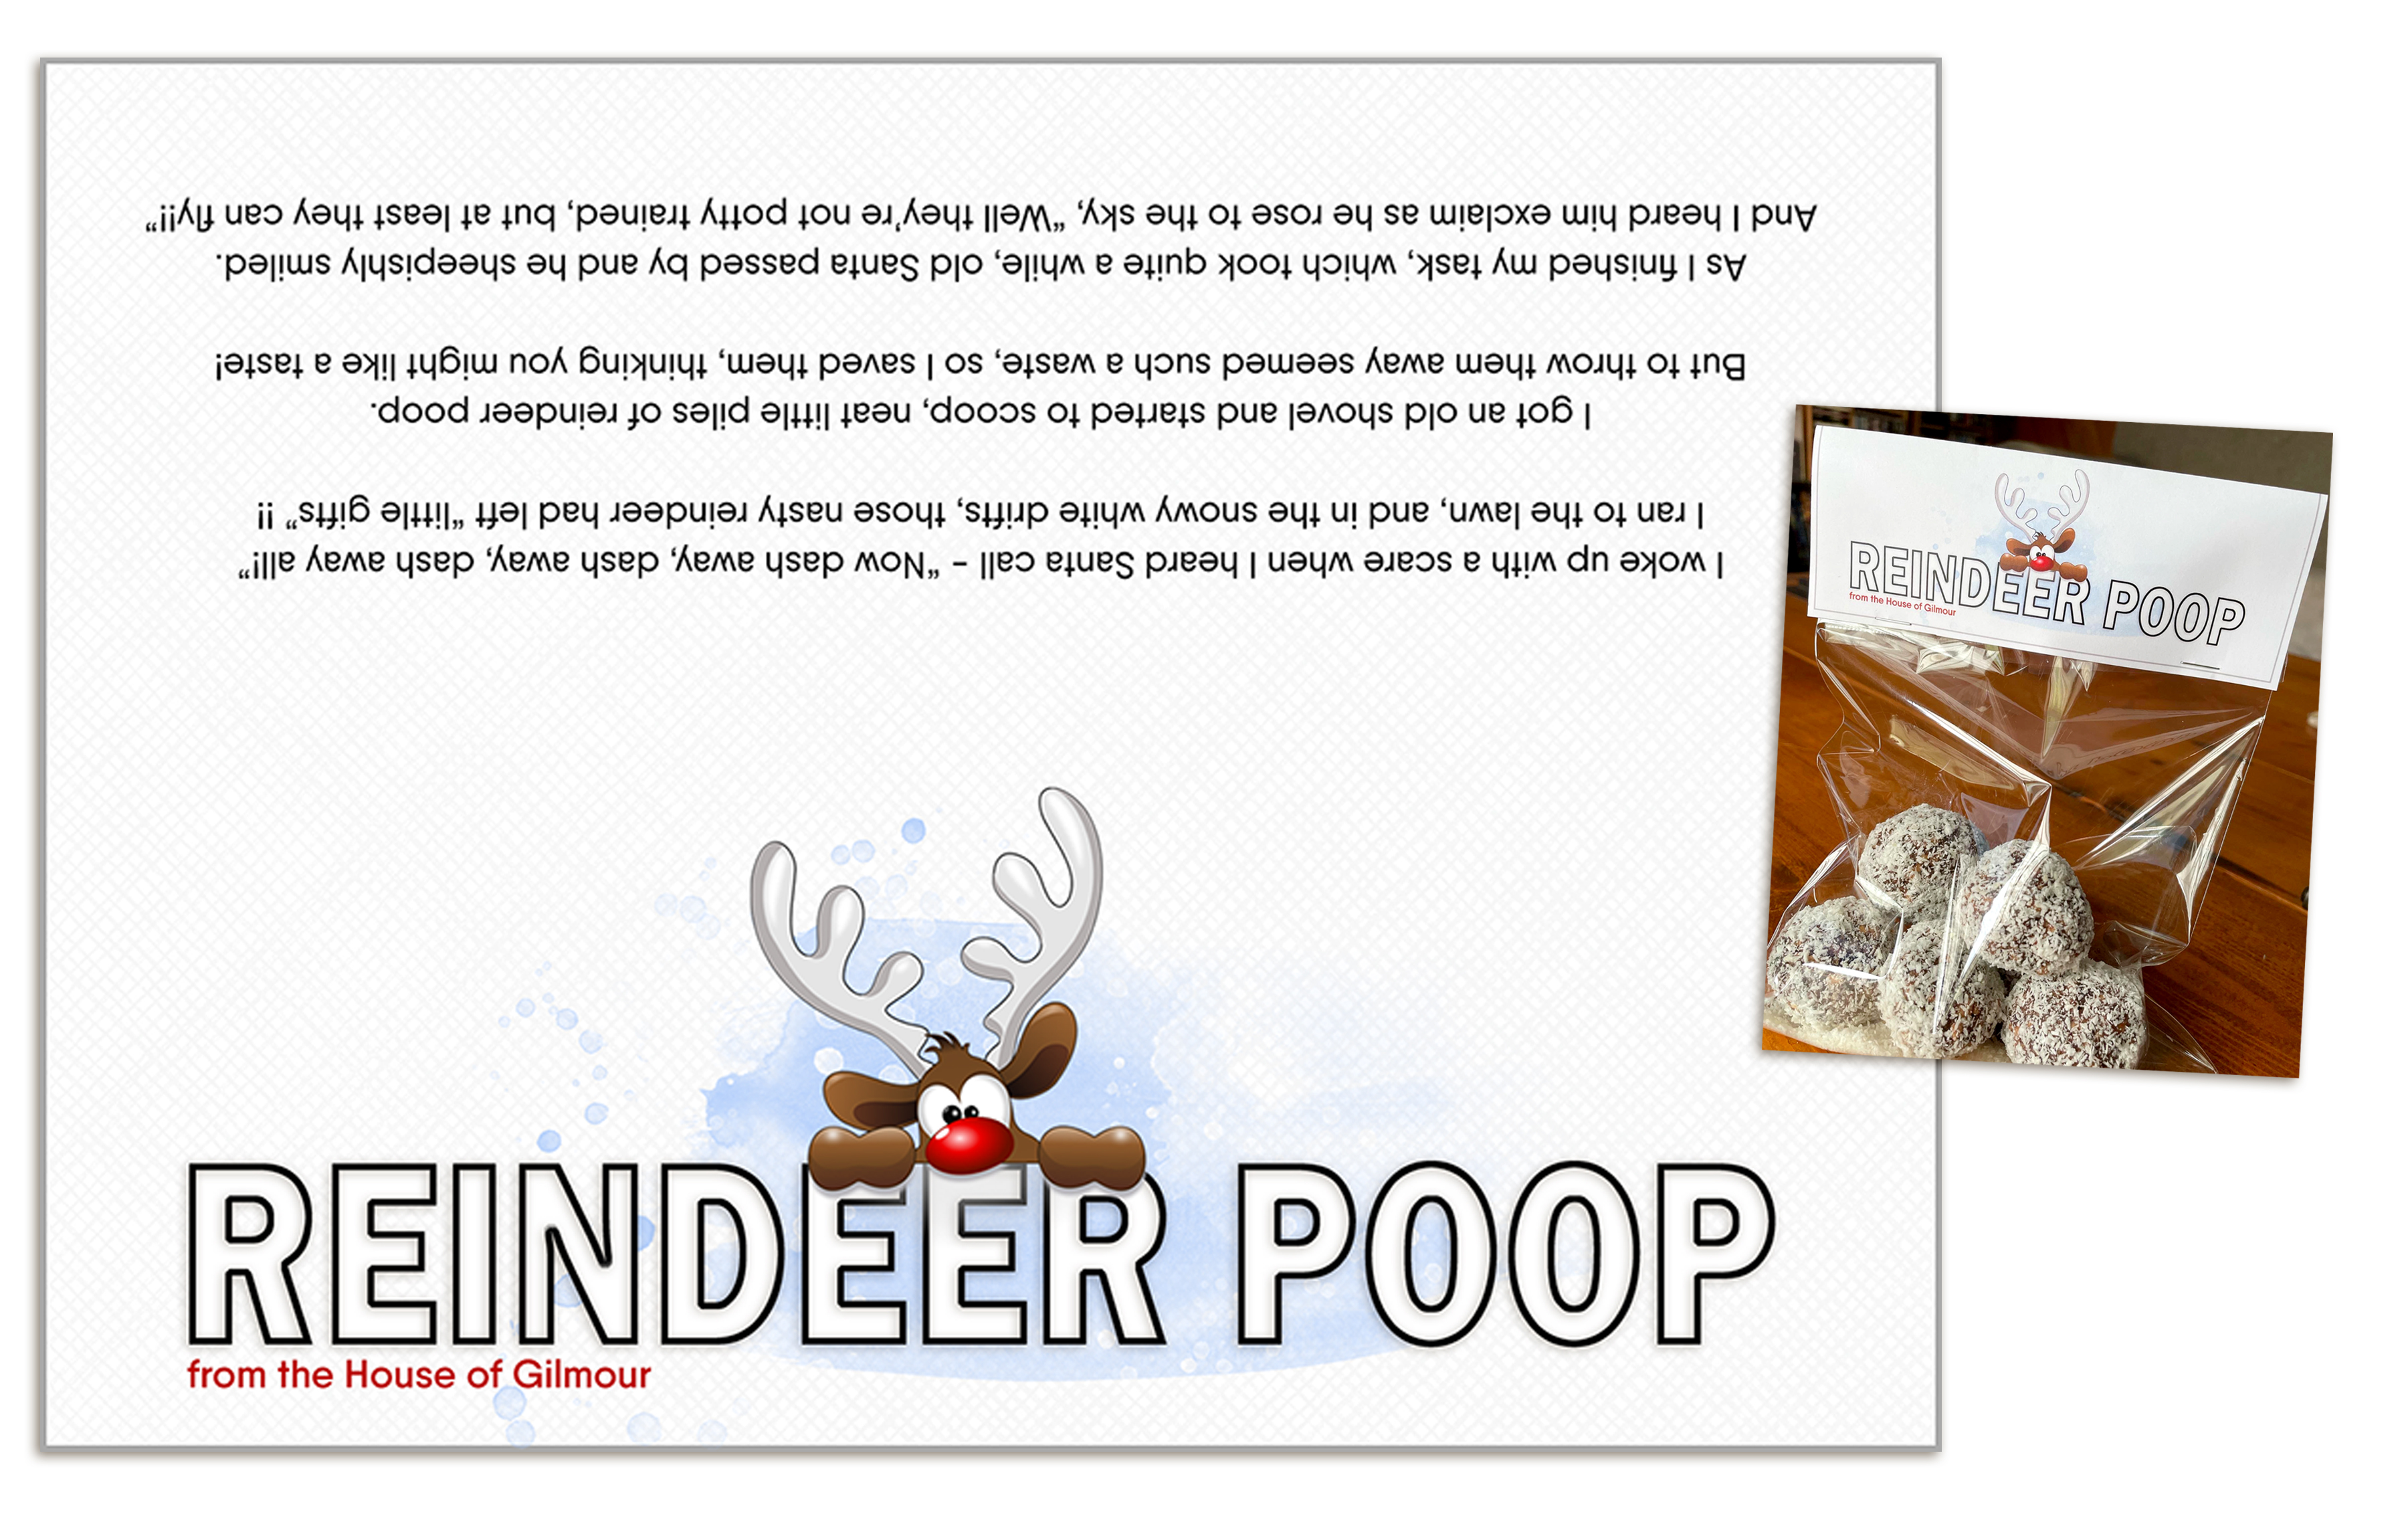 Reindeer poop labels